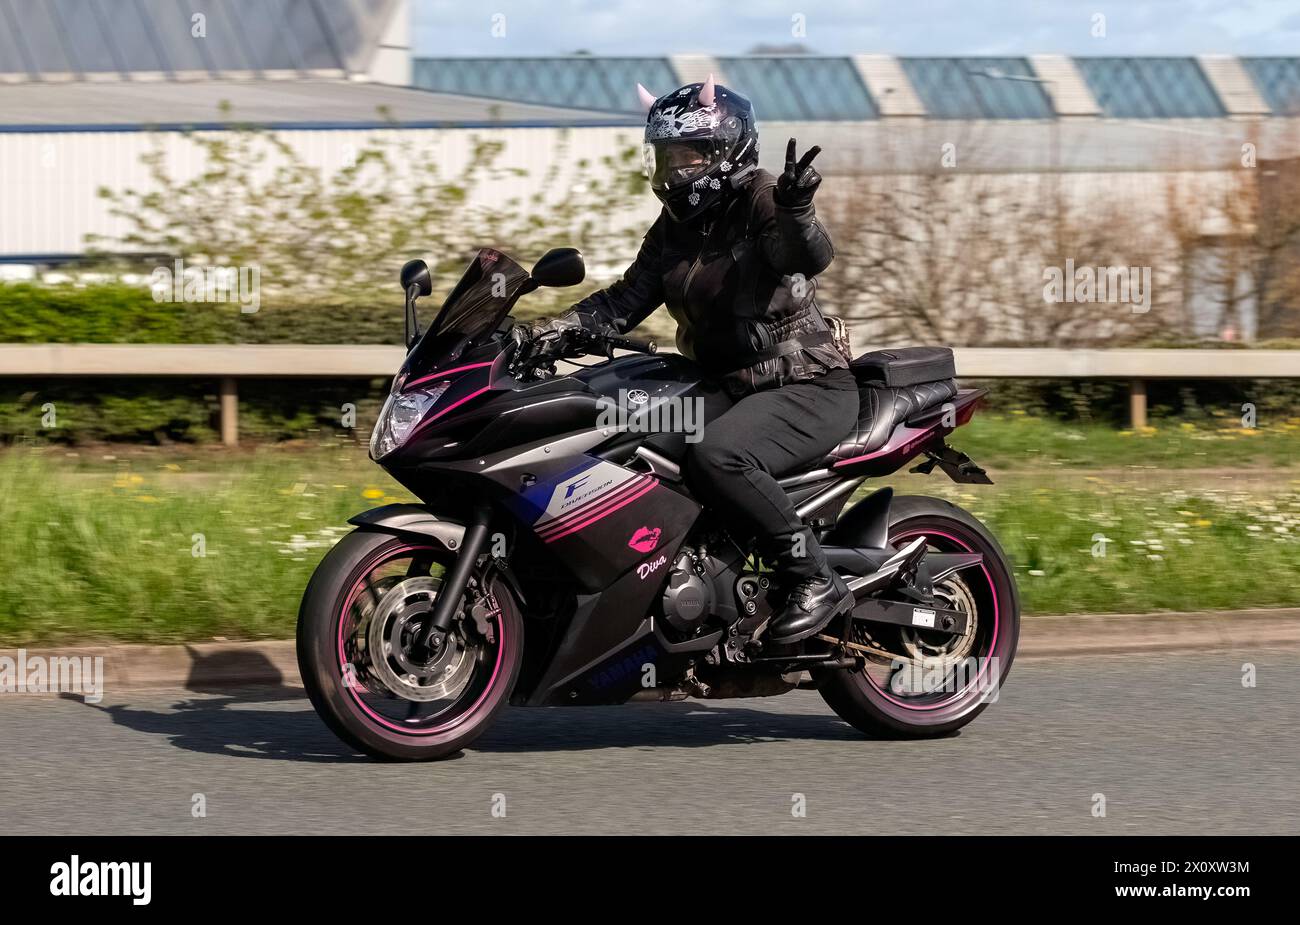 Milton Keynes, UK- 14 avril 2024 : 2014 Yamaha XJ montée par une motard dame avec des cornes roses sur son casque Banque D'Images